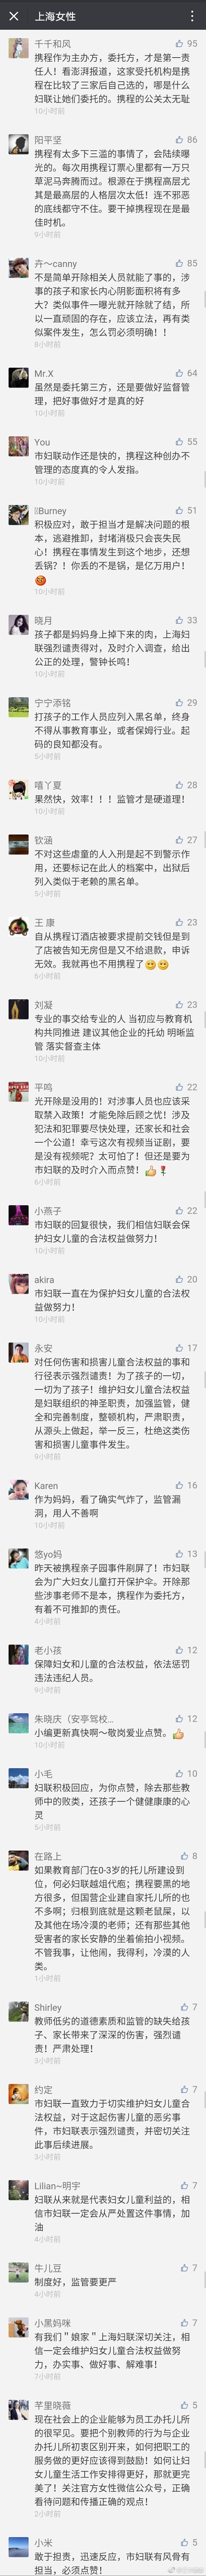 上海妇联的官方微信公众号下面她们人工精选出来的评论很精彩